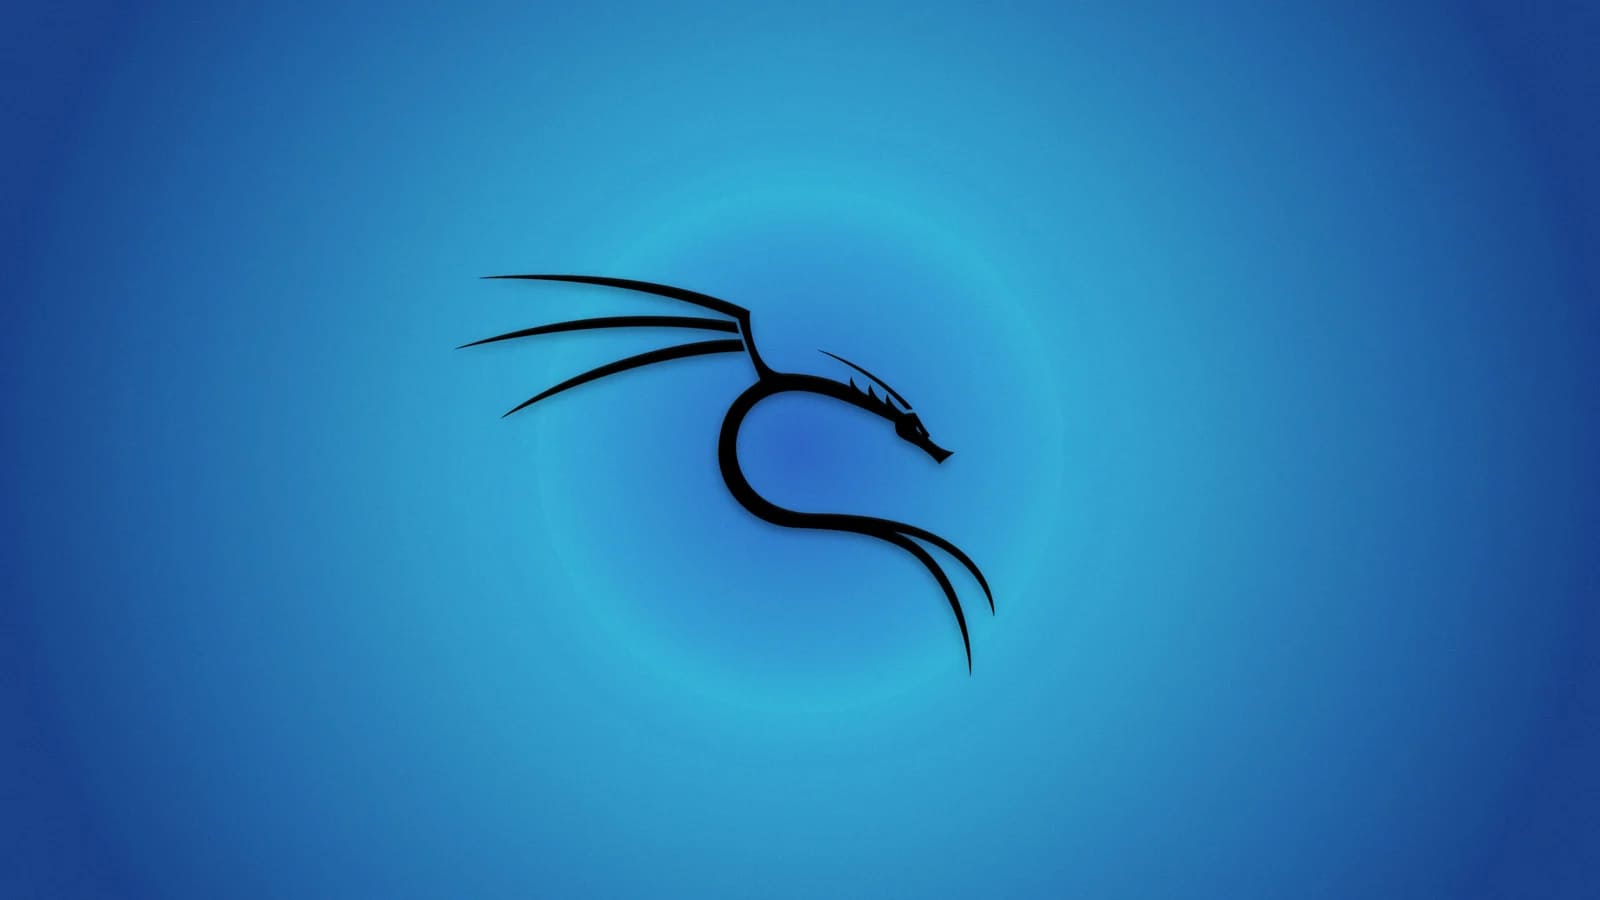 Kali Linux 2021.4 tích hợp thêm 9 Tool mới và hỗ trợ Apple M1